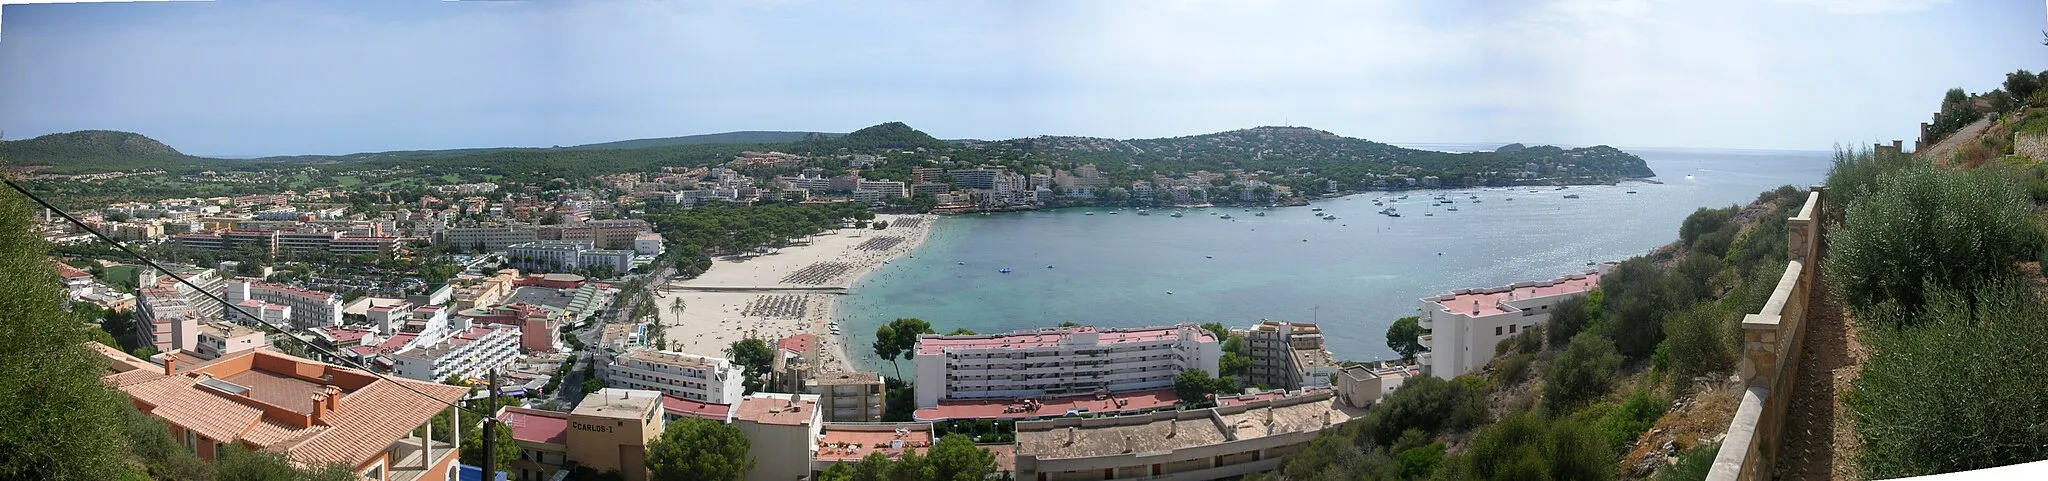 Photo showing: Panorama of Santa Ponsa, Mallorca